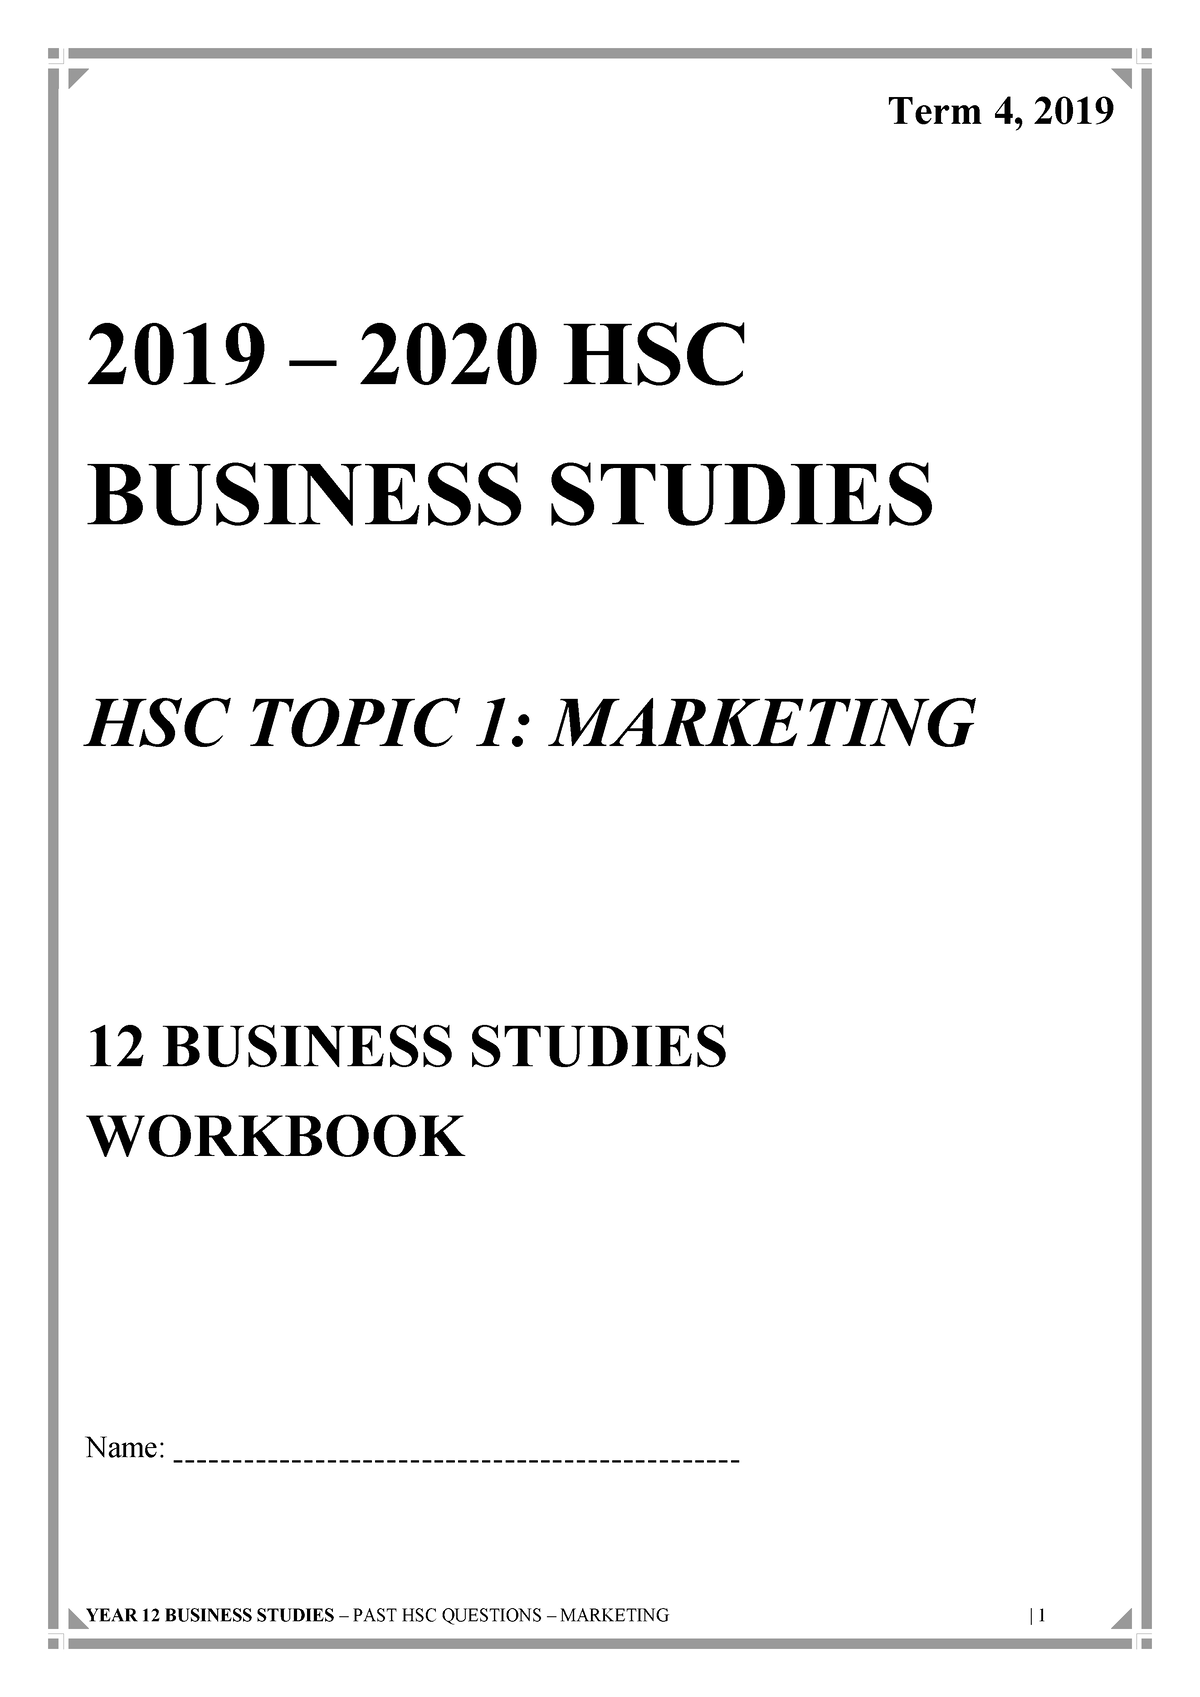 hsc business studies essay questions